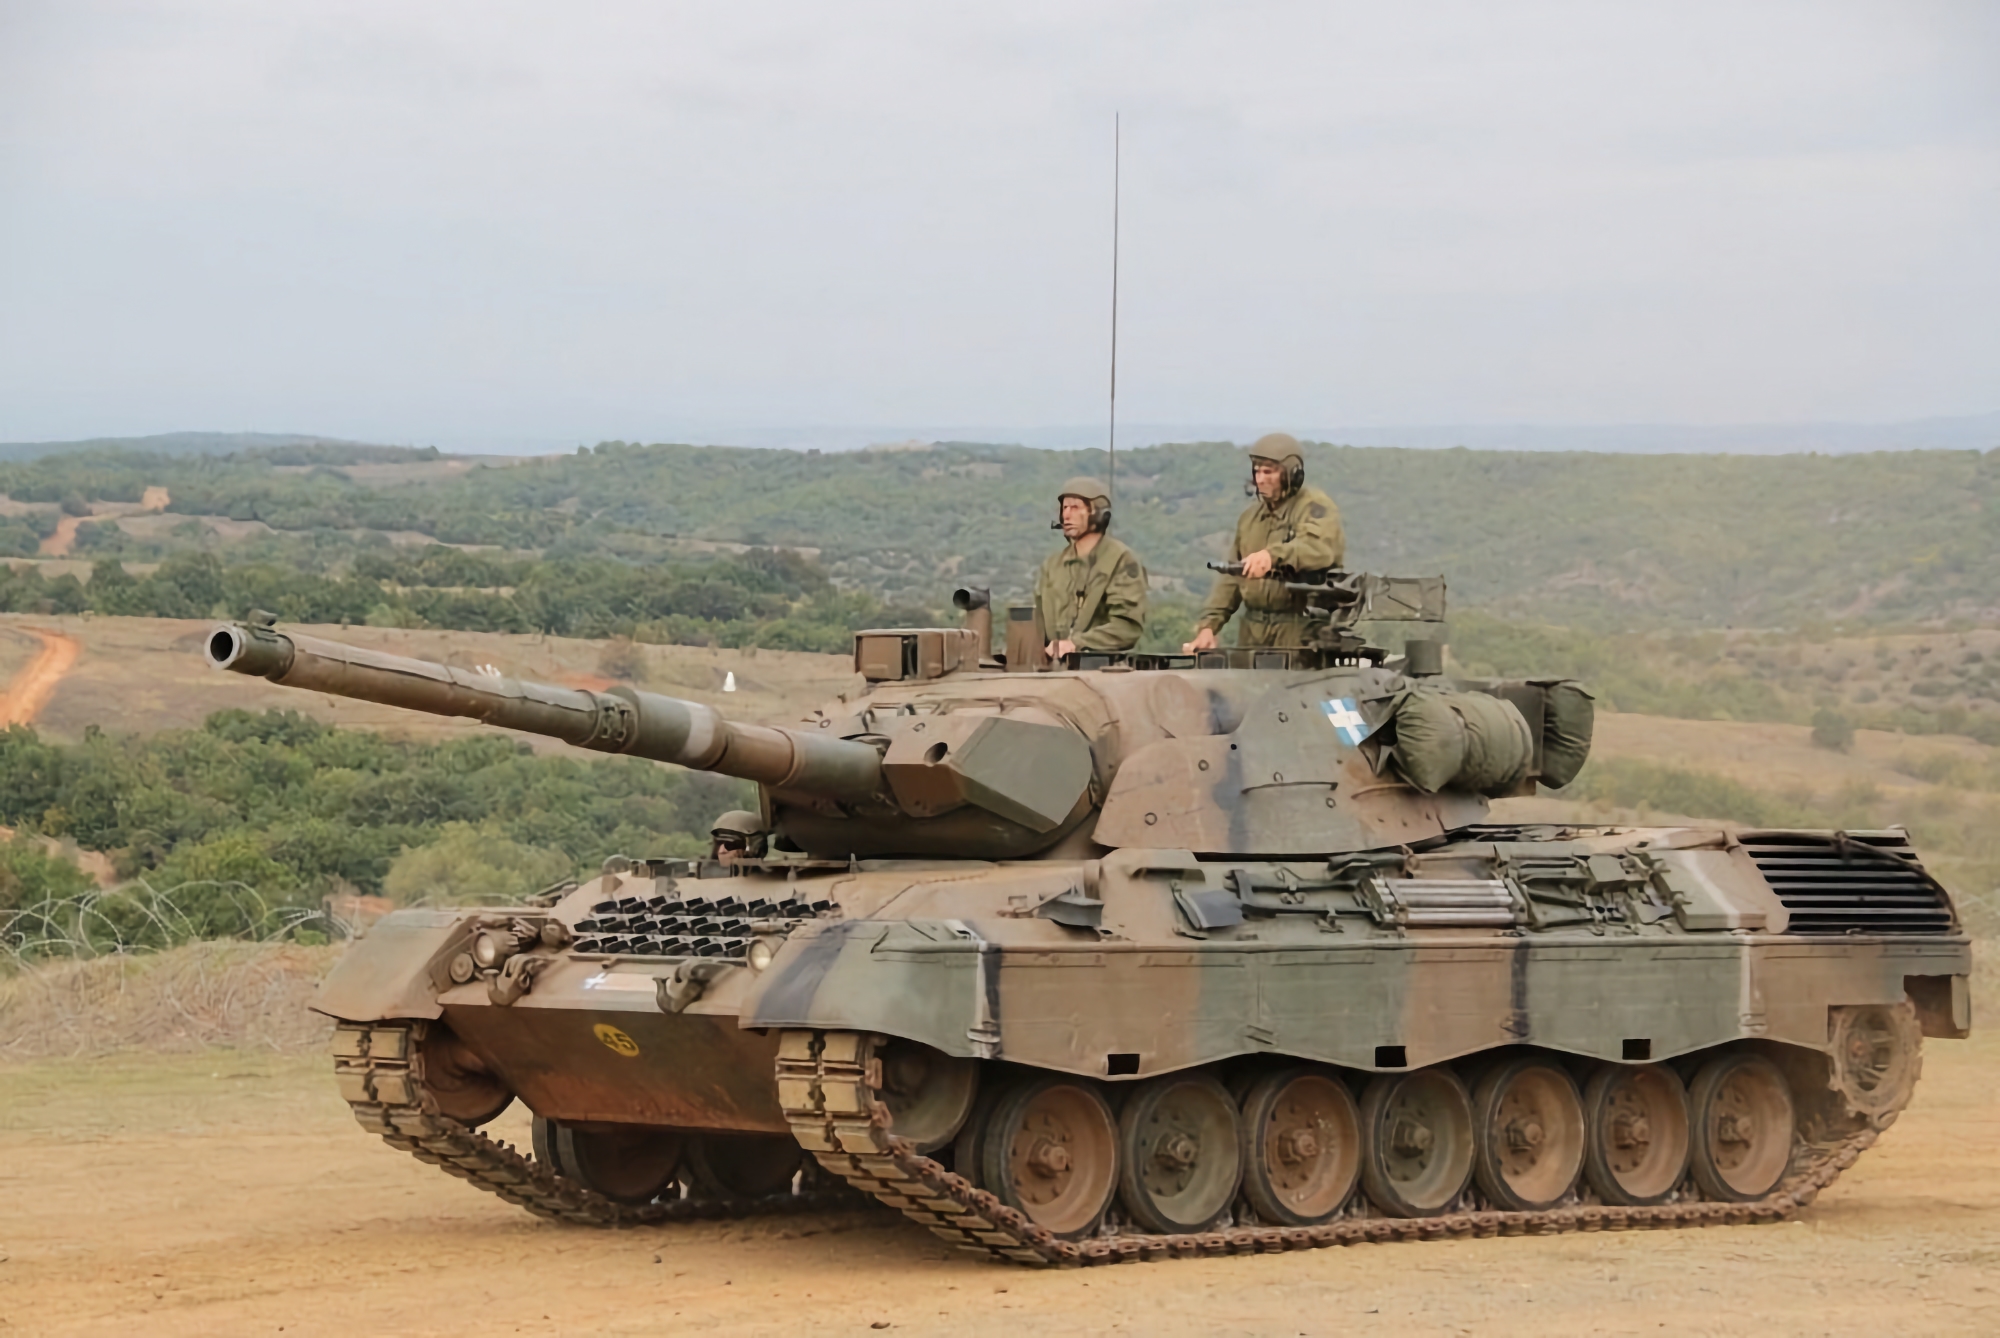 Ukraina kan få cirka 100 Leopard 1-stridsvagnar från Grekland